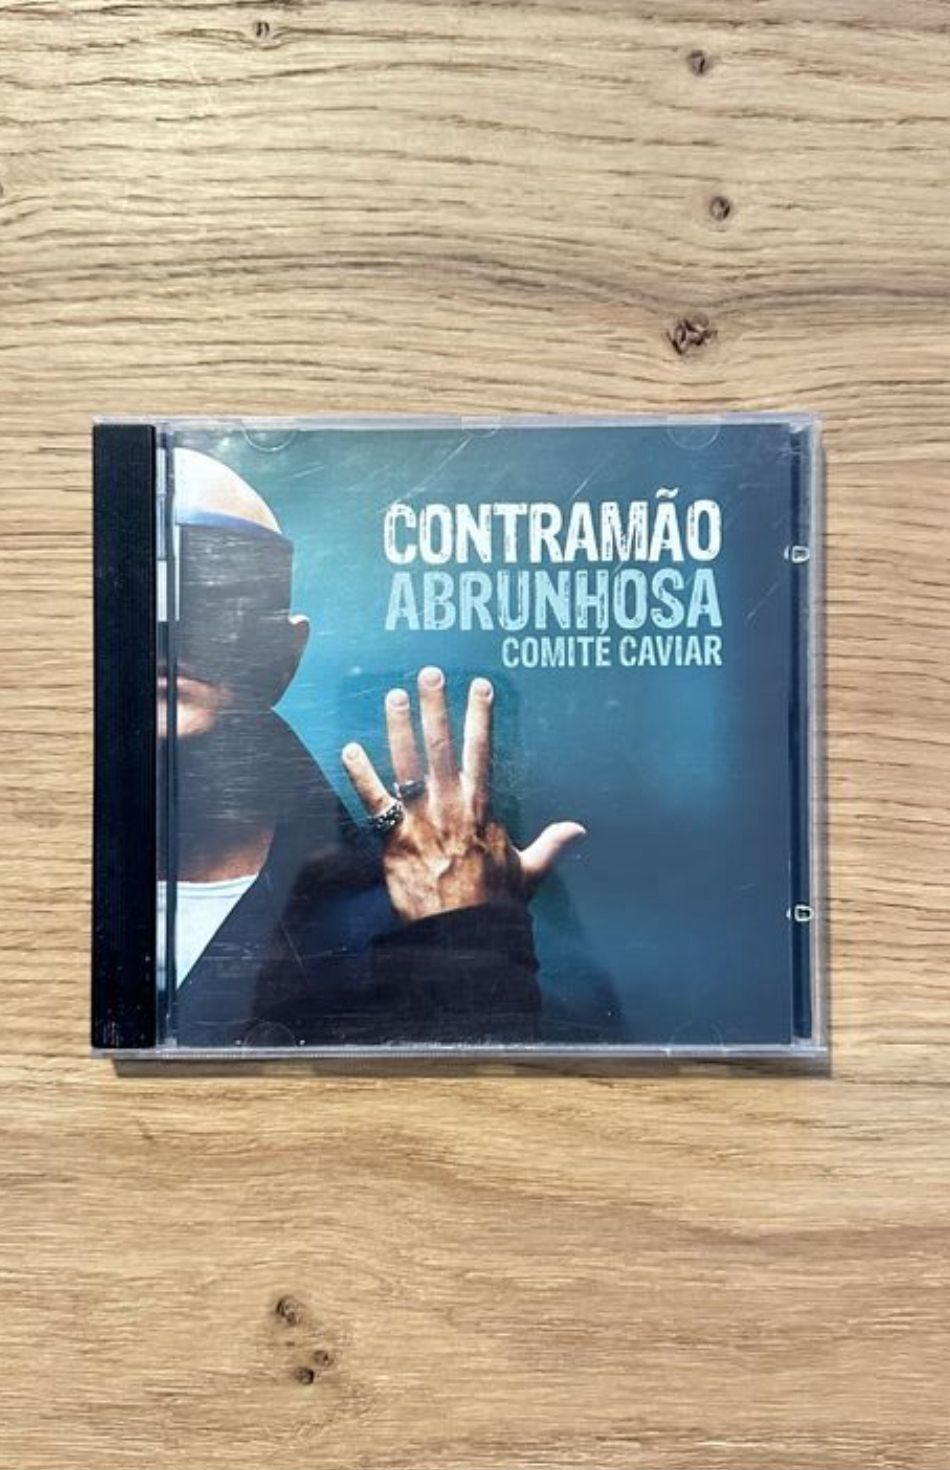 Álbum CD “Contramão” Pedro Abrunhosa e Comité Caviar.
Entrego